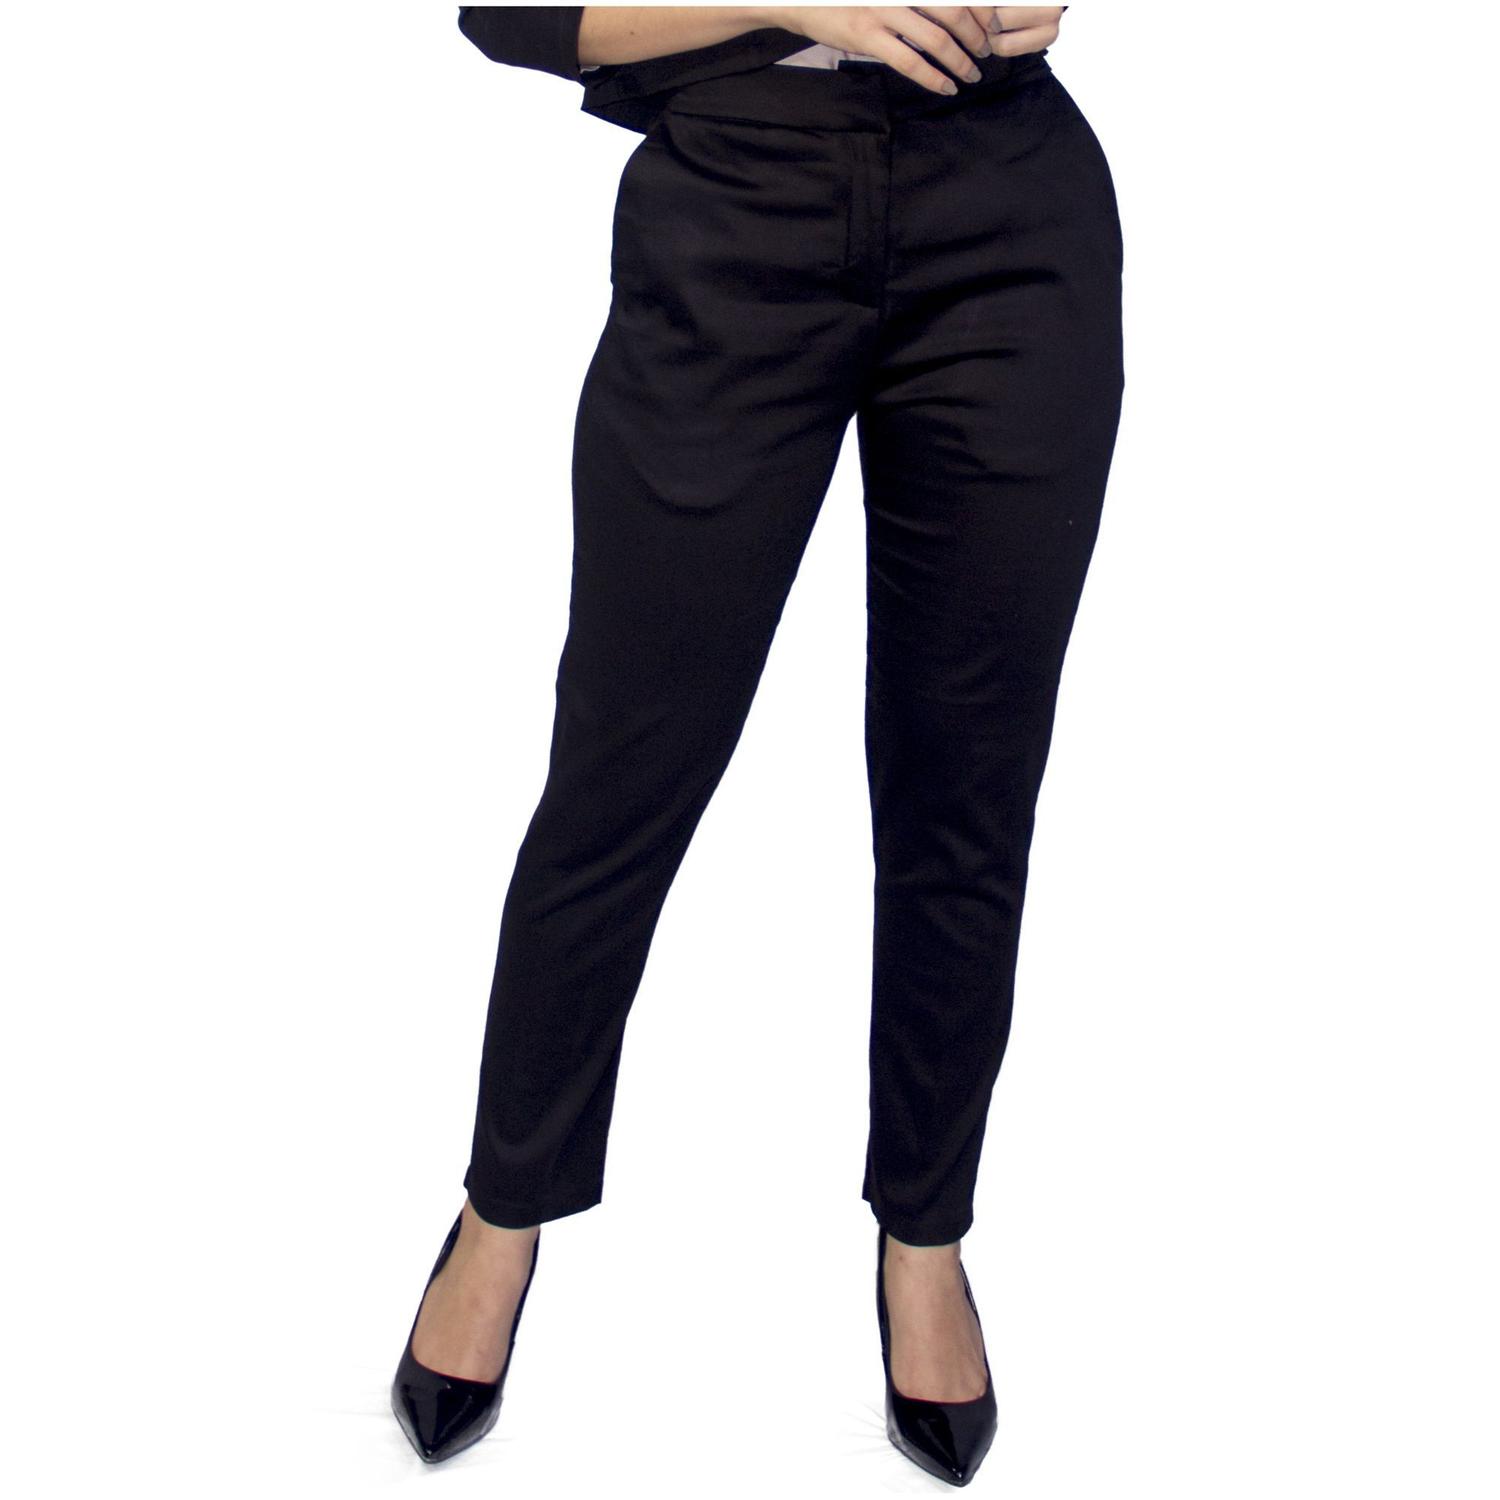 calça social feminina preta com bolso